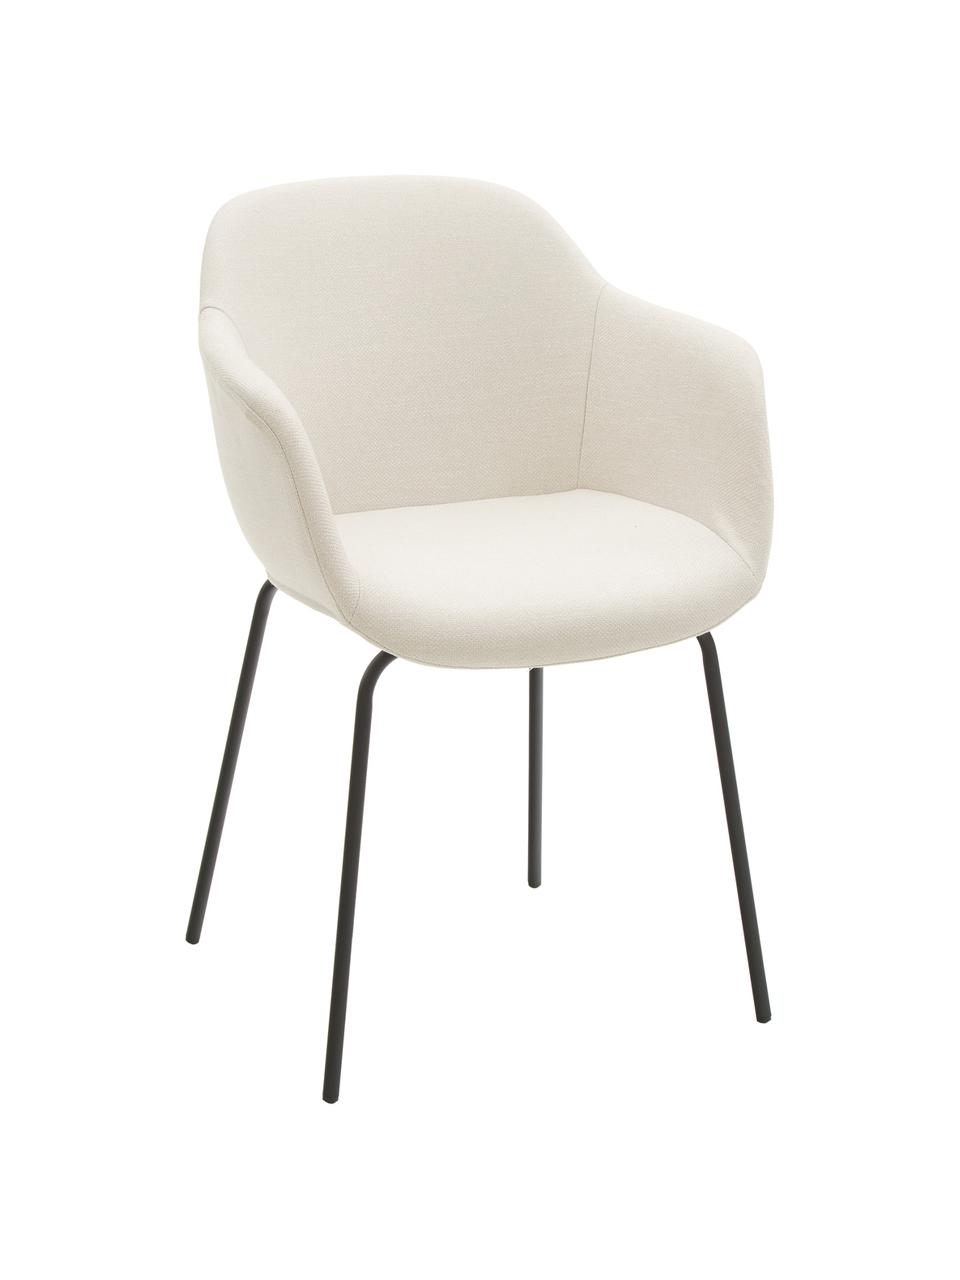 Petite chaise scandinave blanc crème Fiji, Coque : blanc crème Pieds : noir, mat, larg. 58 x prof. 56 cm